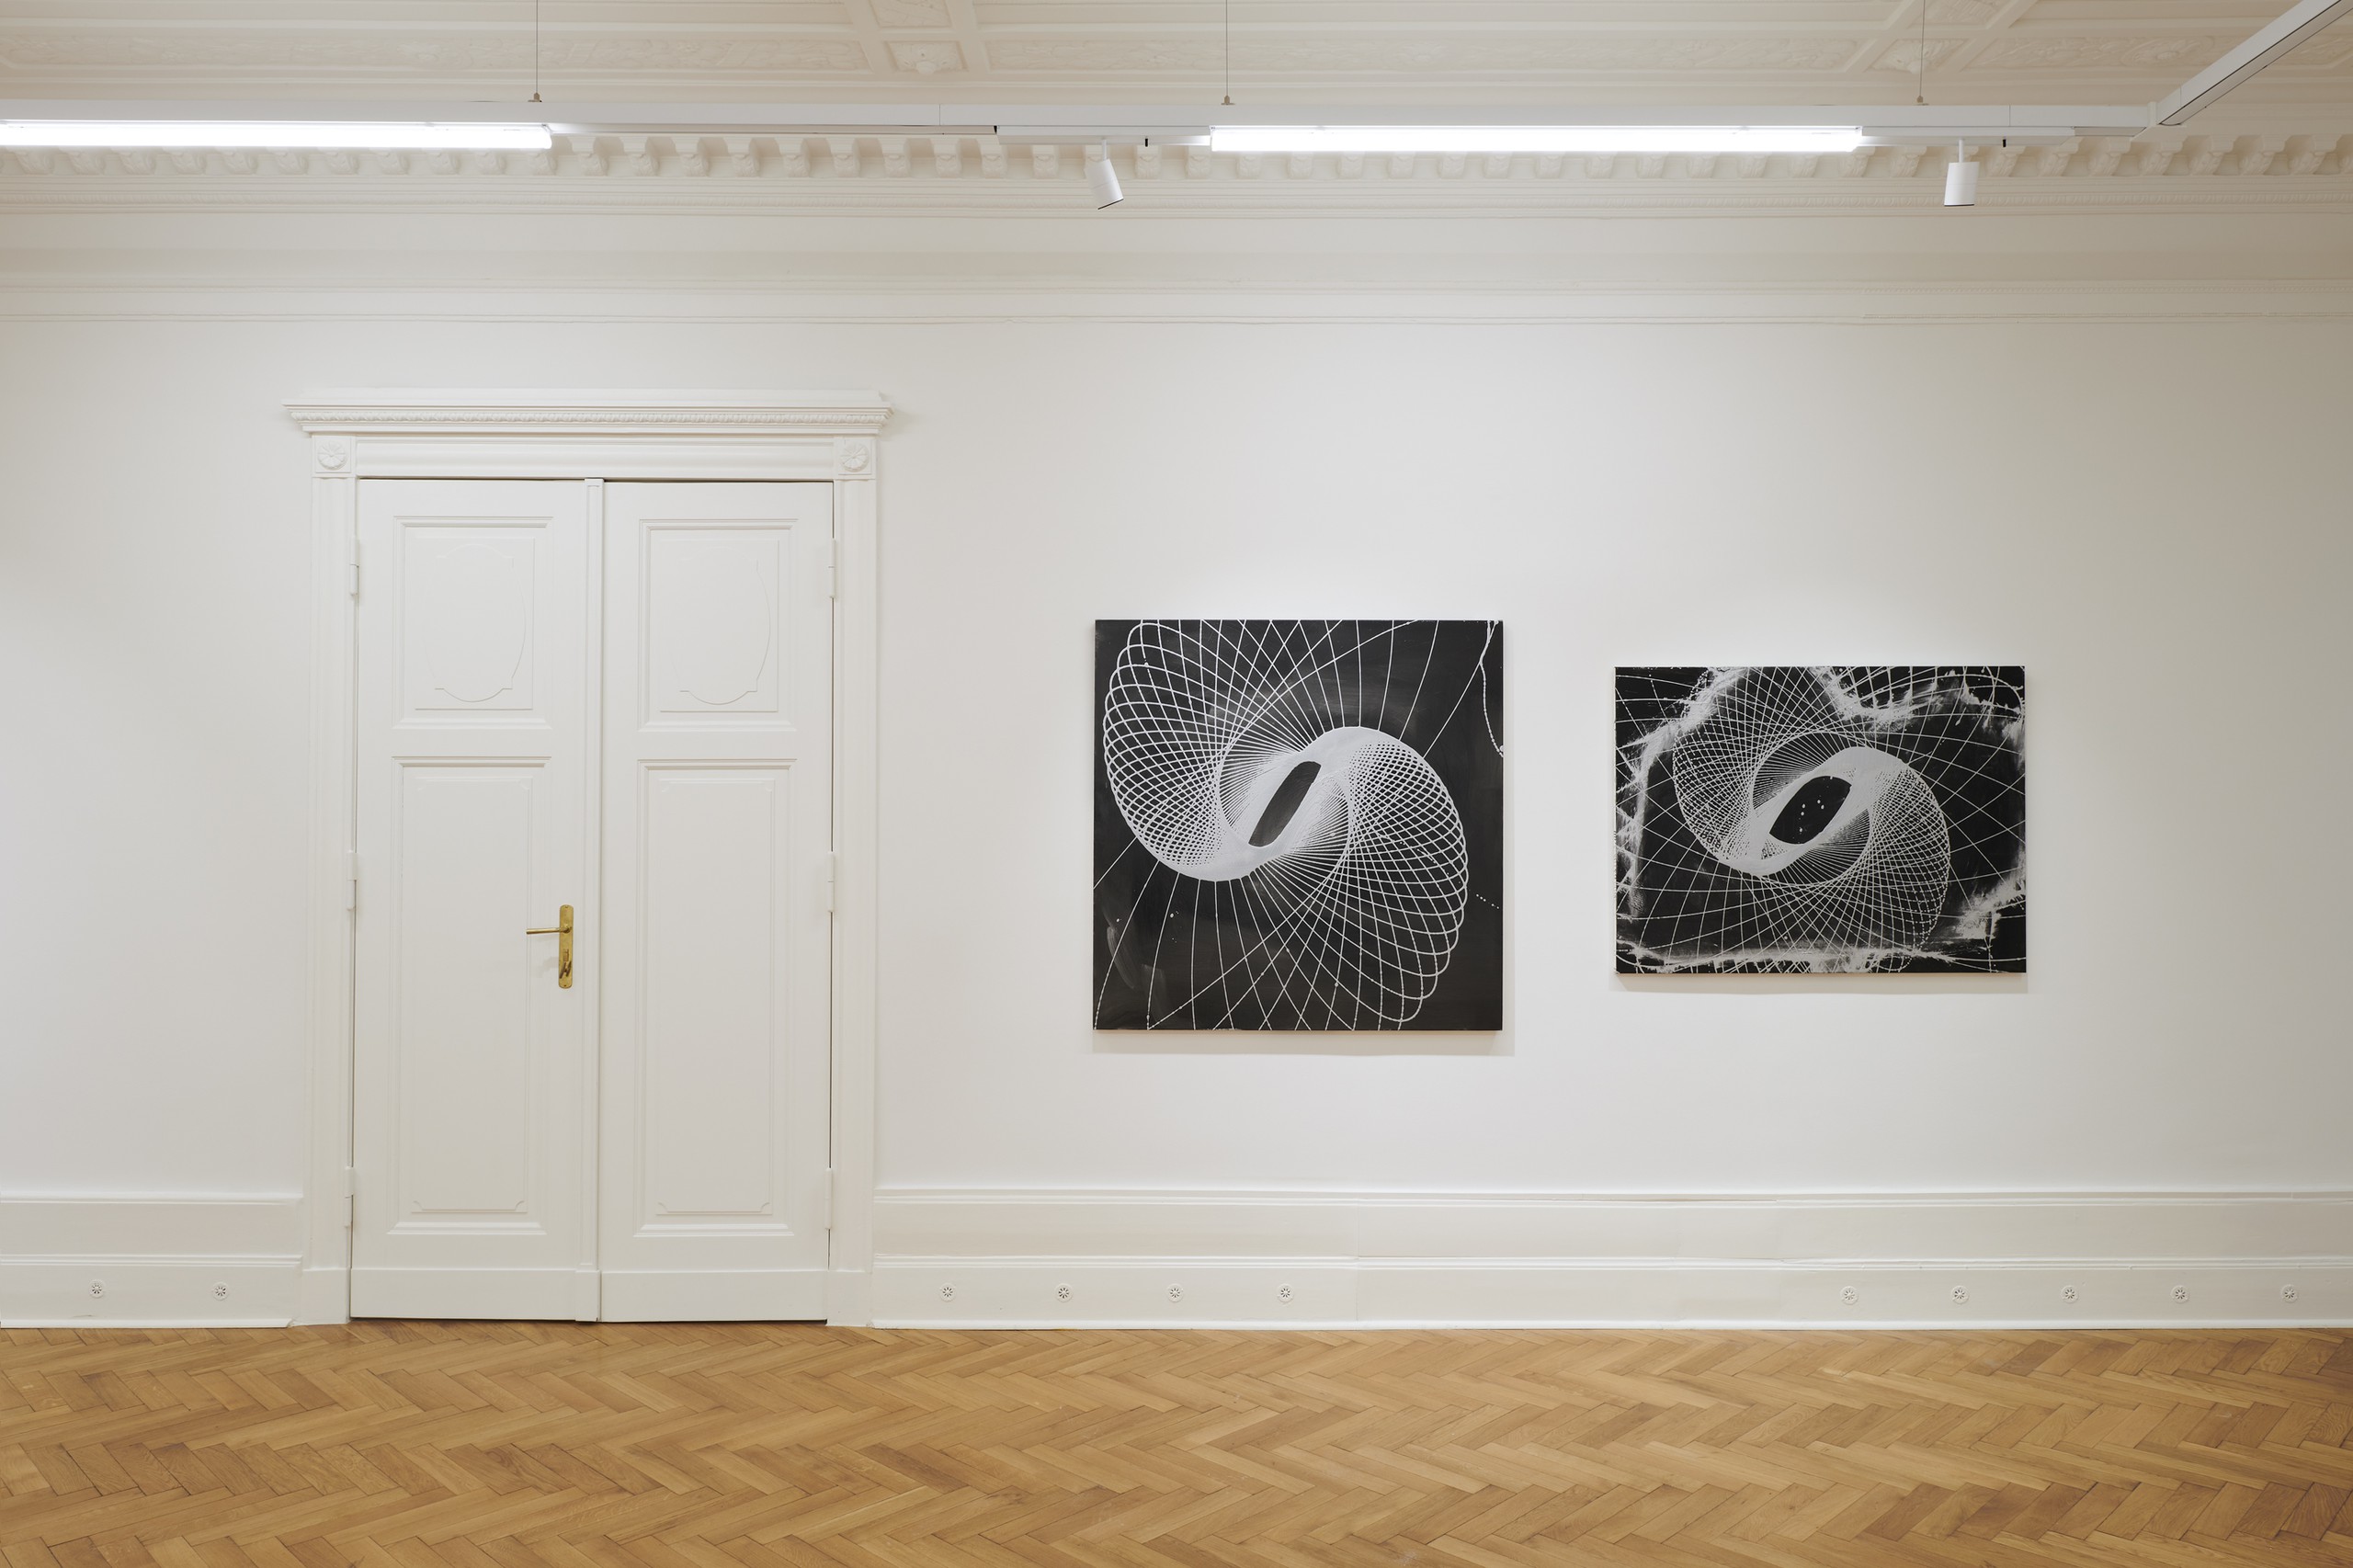 Installation view, Spirals, Société, Berlin, 2021